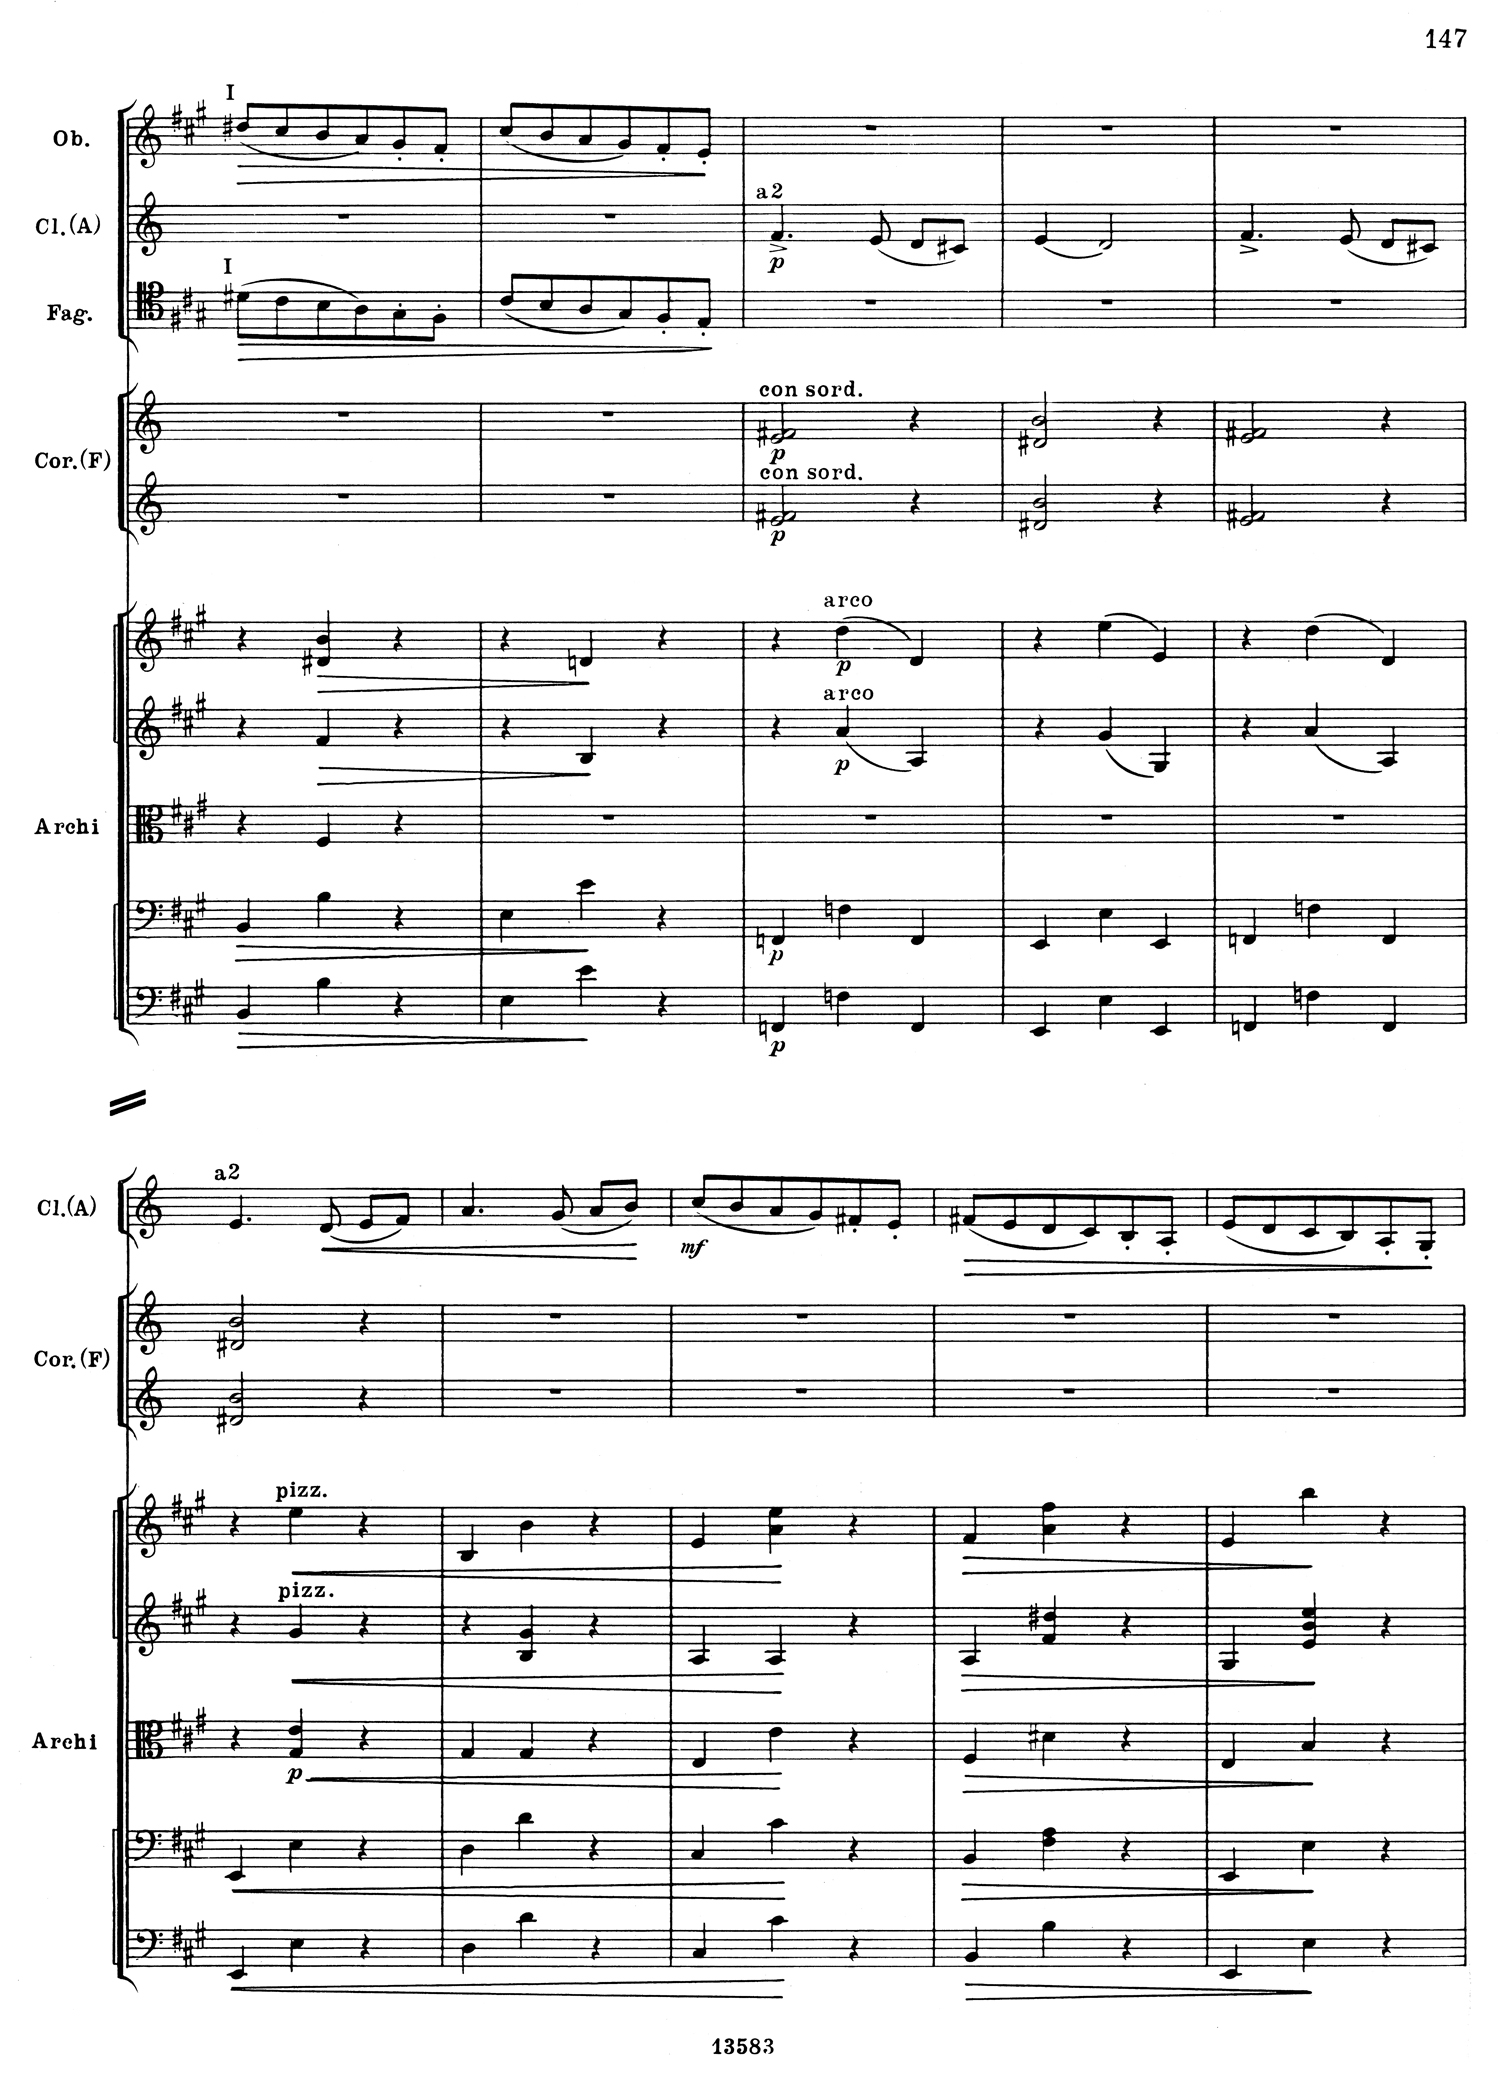 Tchaikovsky 5 Mvt 3 Score 2.jpg